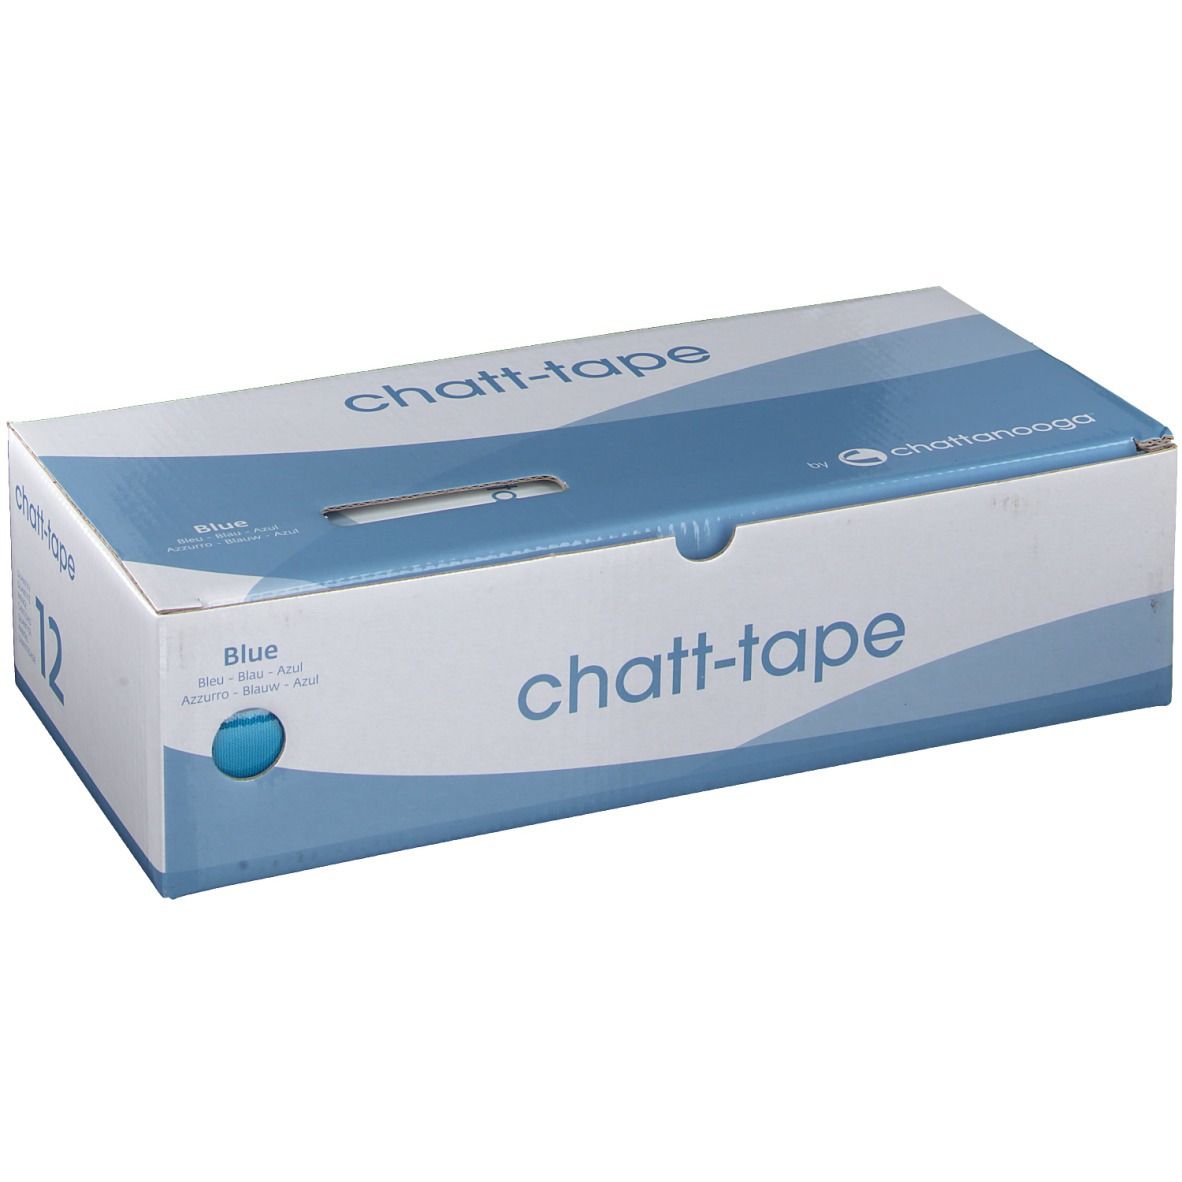 chatt-tape 5 cm x 5 m blau